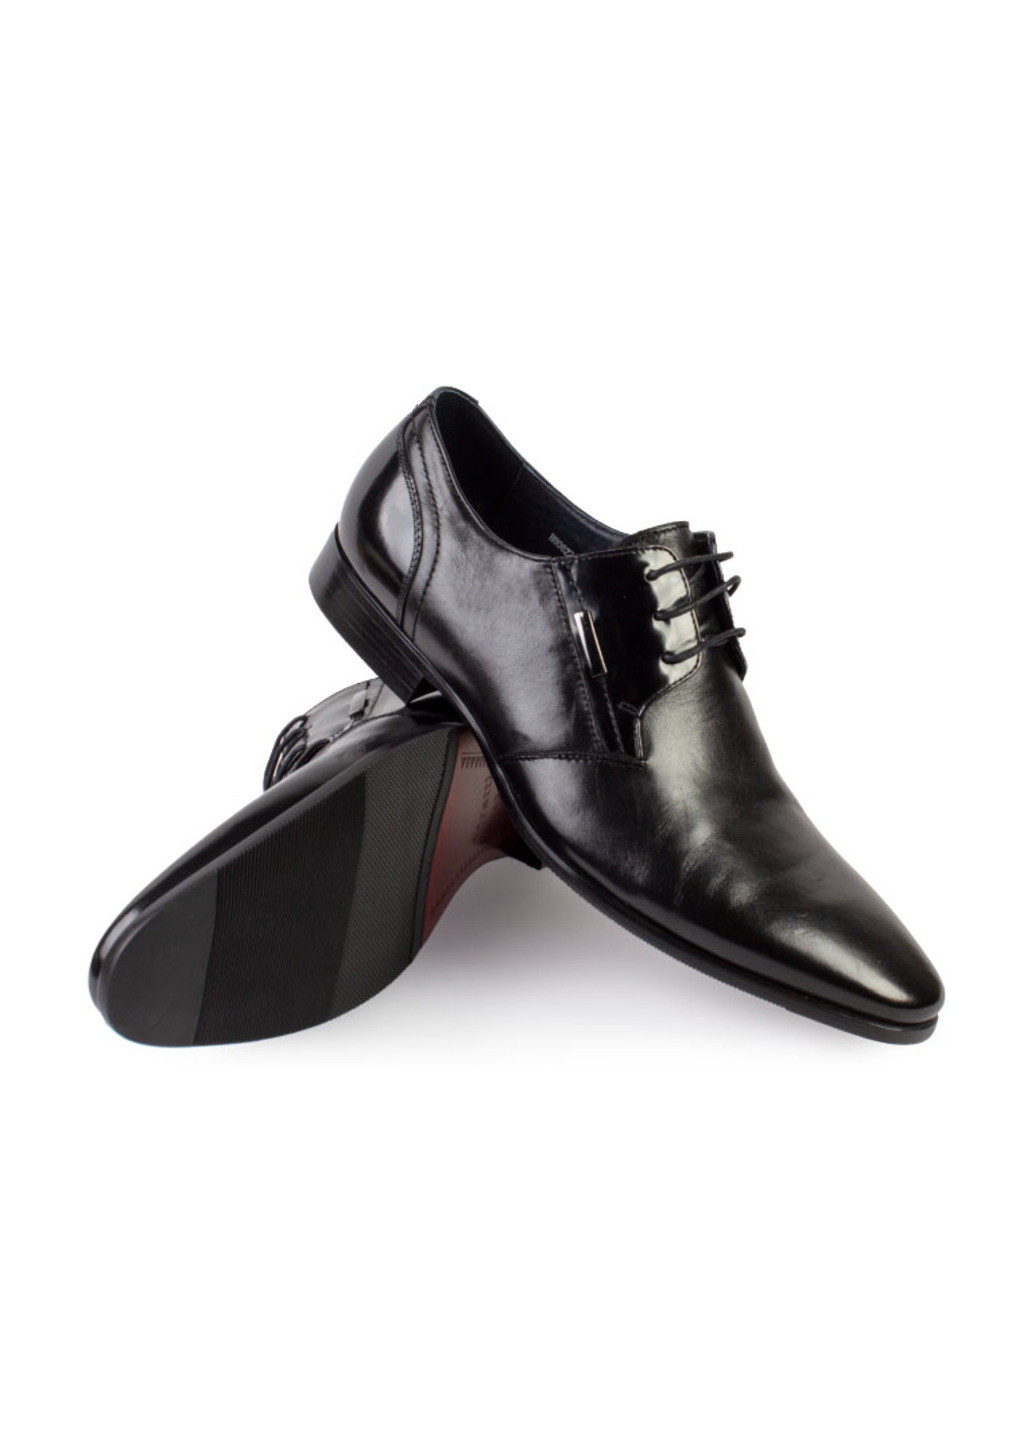 Черные повседневные туфли мужские бренда 9402142_(1) La Pinta на шнурках